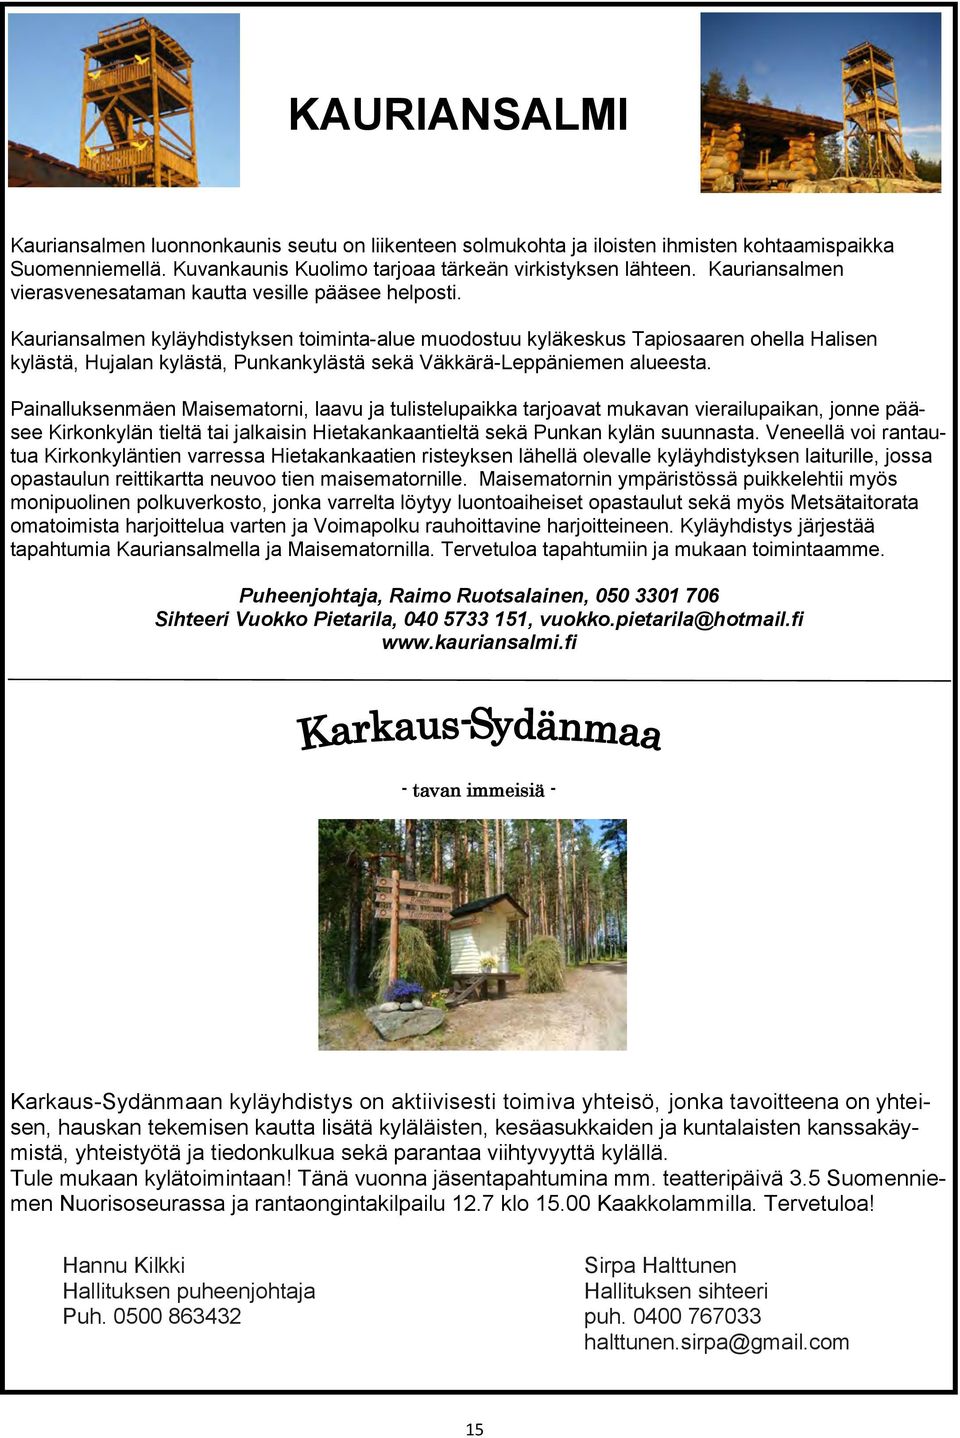 Kauriansalmen kyläyhdistyksen toiminta-alue muodostuu kyläkeskus Tapiosaaren ohella Halisen kylästä, Hujalan kylästä, Punkankylästä sekä Väkkärä-Leppäniemen alueesta.